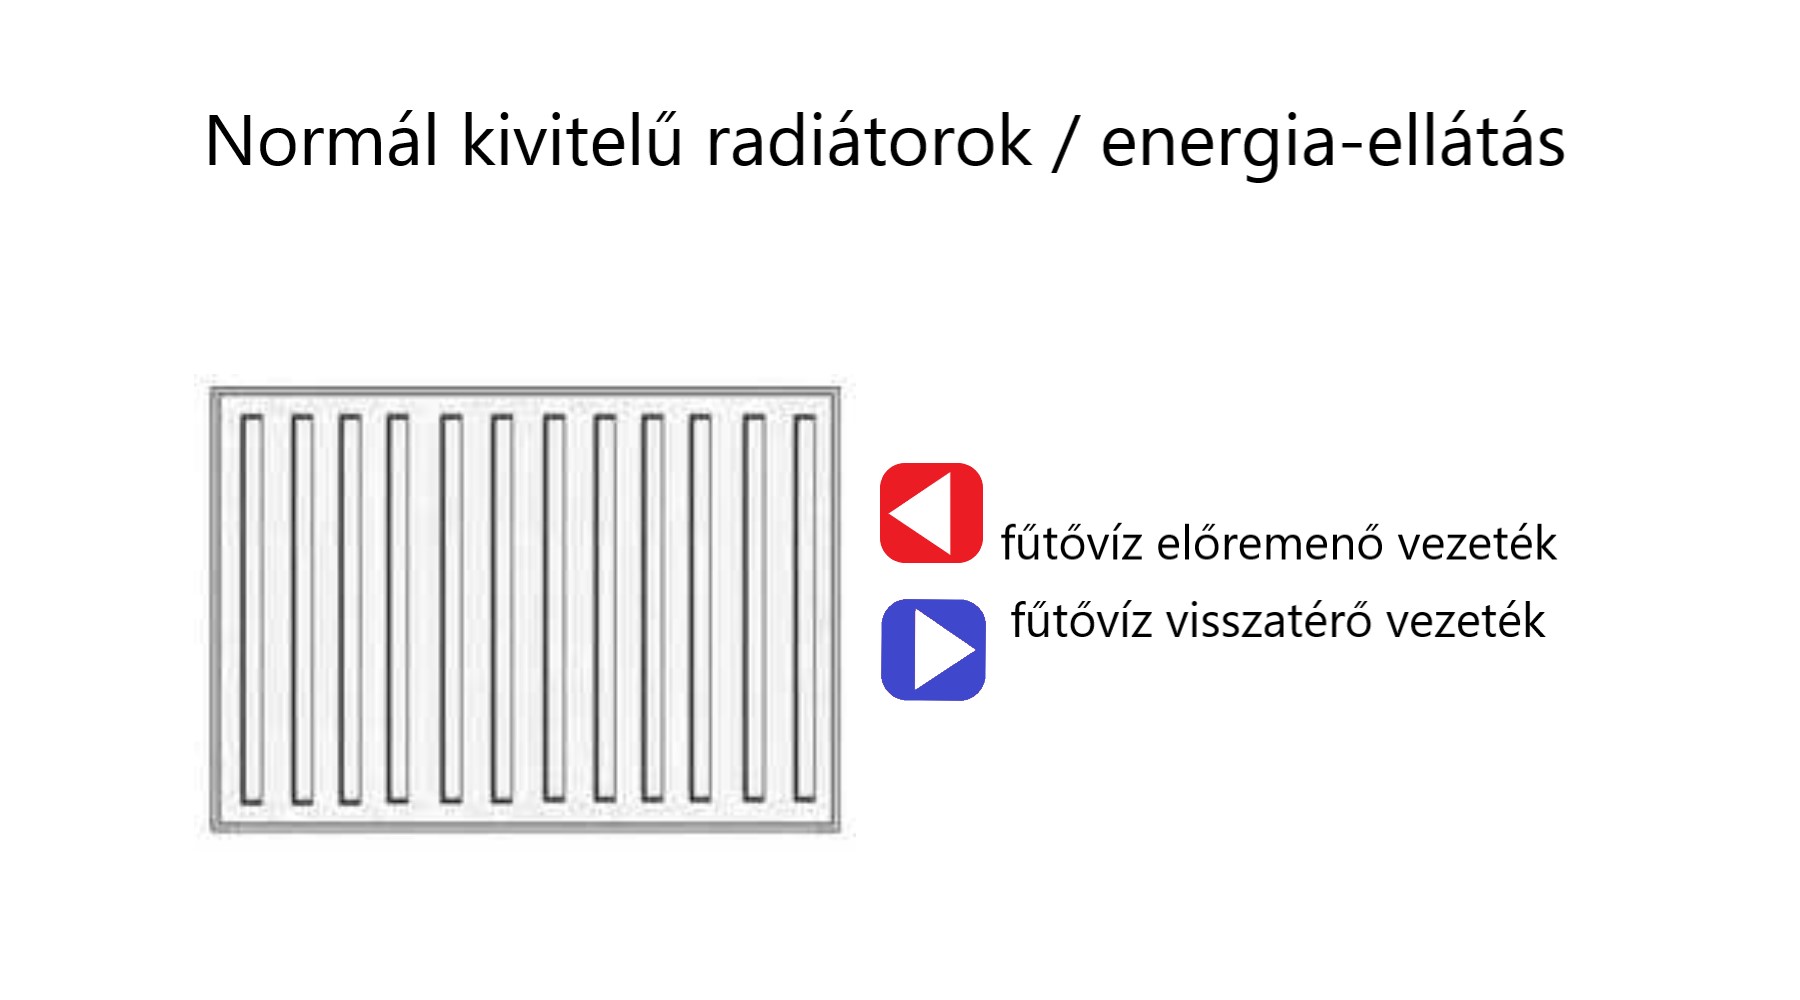 radiátorok fűtési energia-ellátása